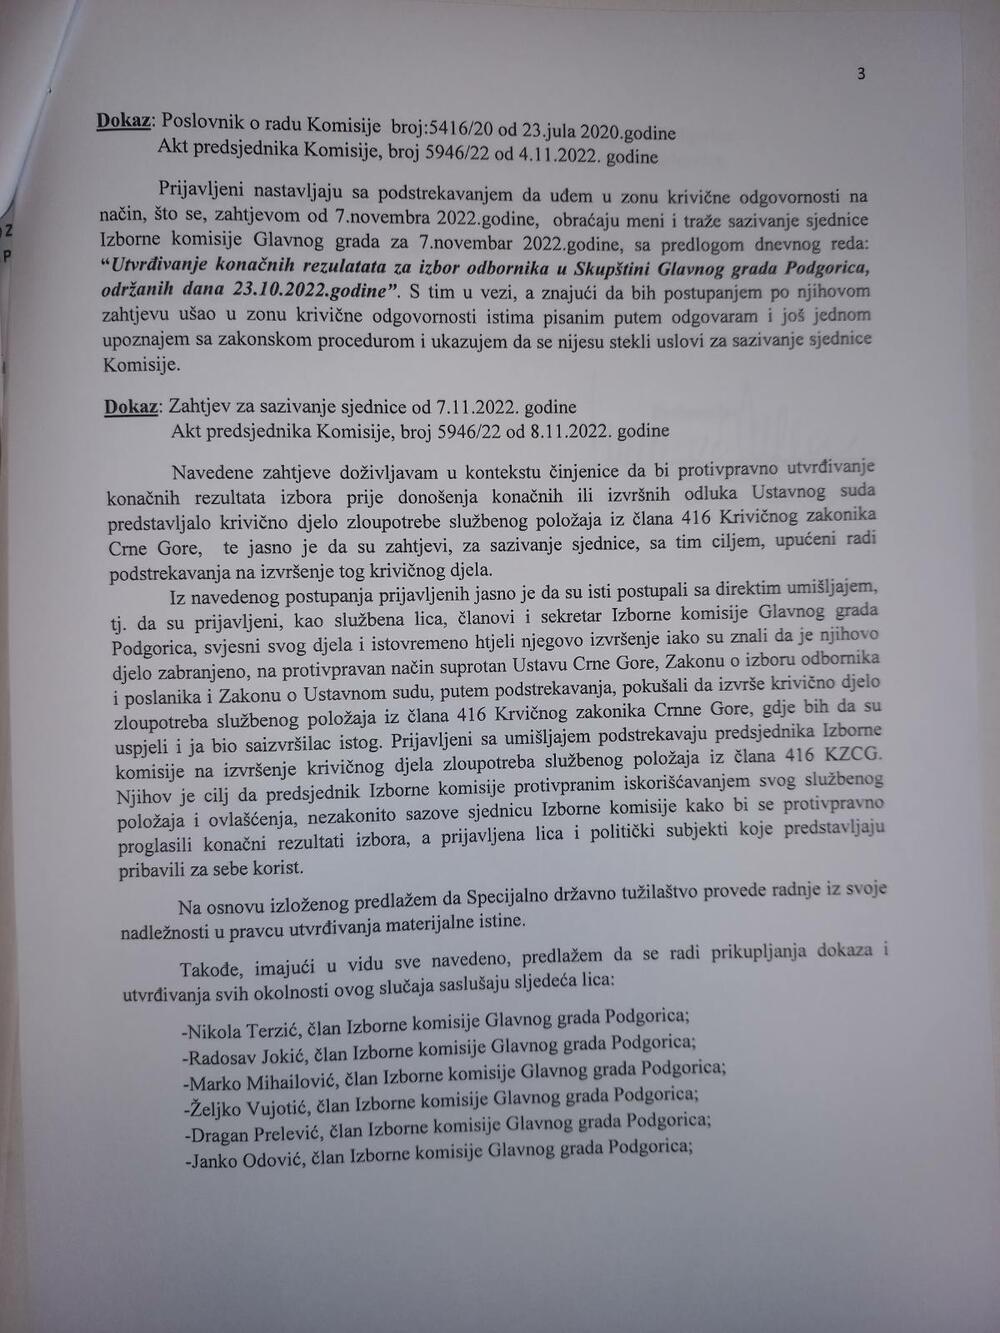 <p>Vukčević je u prijavi naveo da prijavljeni vrše pritisak na njega kako bi se mimo zakonskih normi rezultati lokalnih izbora u Podgorici proglasili konačnim i prije odluke Ustavnog suda</p>